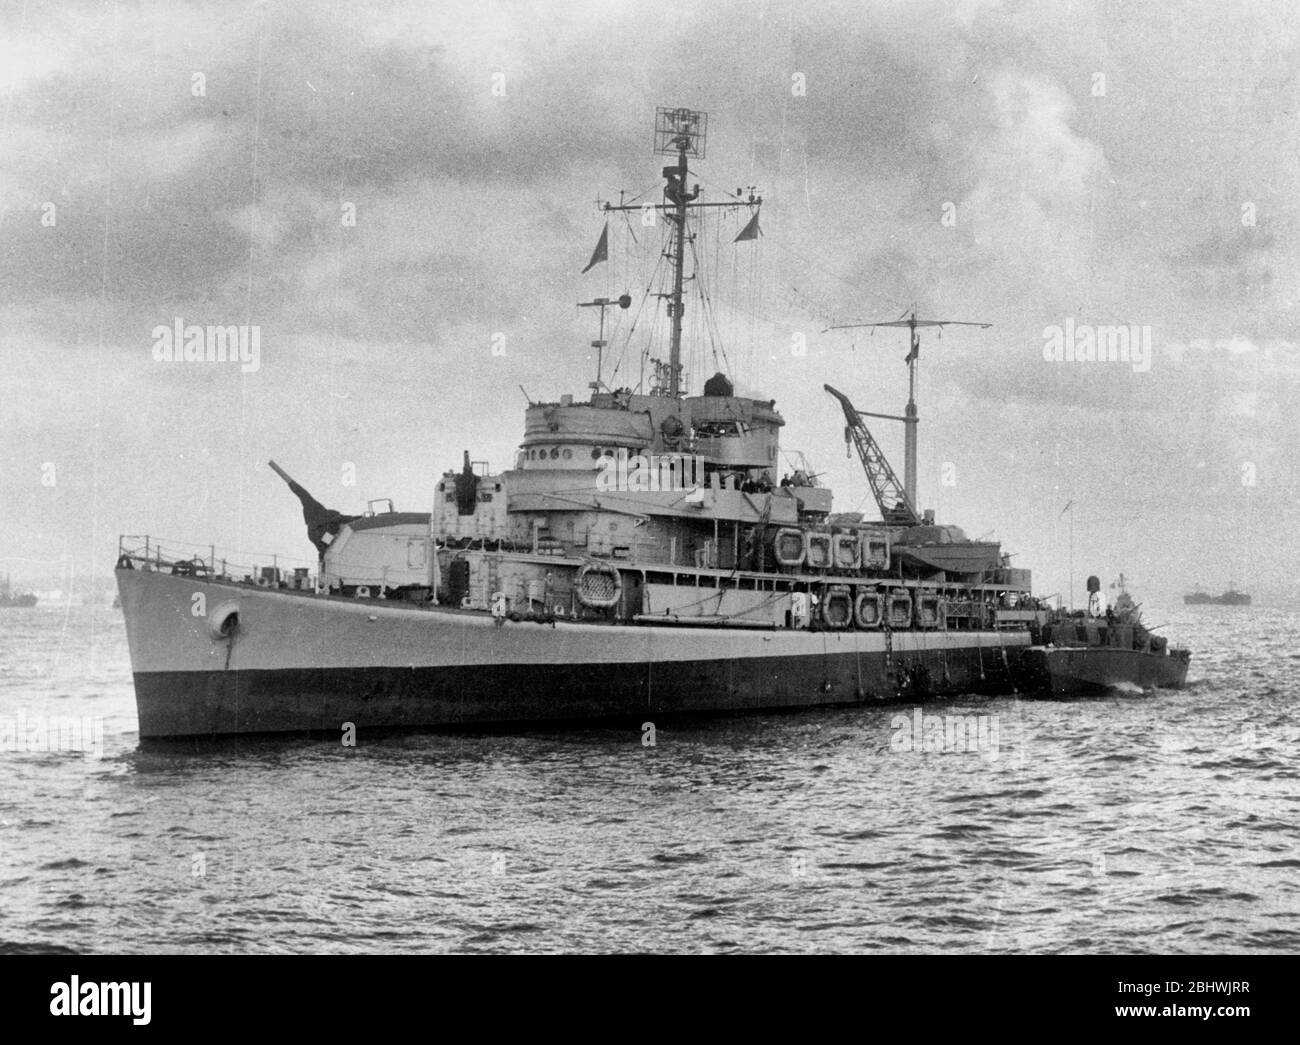 La force amphibie de la marine américaine, le vaisseau amiral USS Biscayne (AVP-11) au large d'Anzio, en Italie, pendant l'opération Shingle. Notez le bateau PT le long. Janvier 1944 Banque D'Images